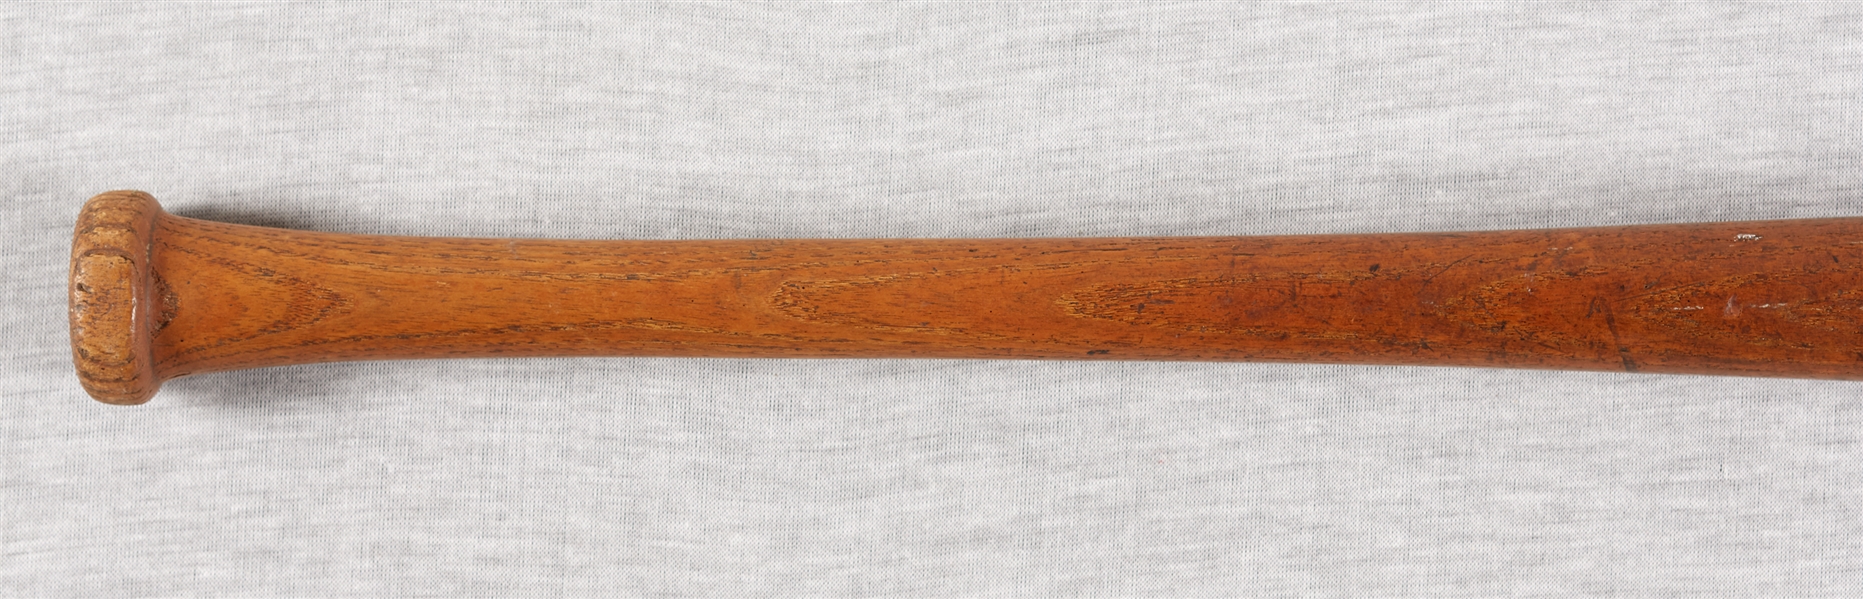 Sam Crawford 1912-1925 Game-Used Spalding Bat (PSA/DNA GU 6)